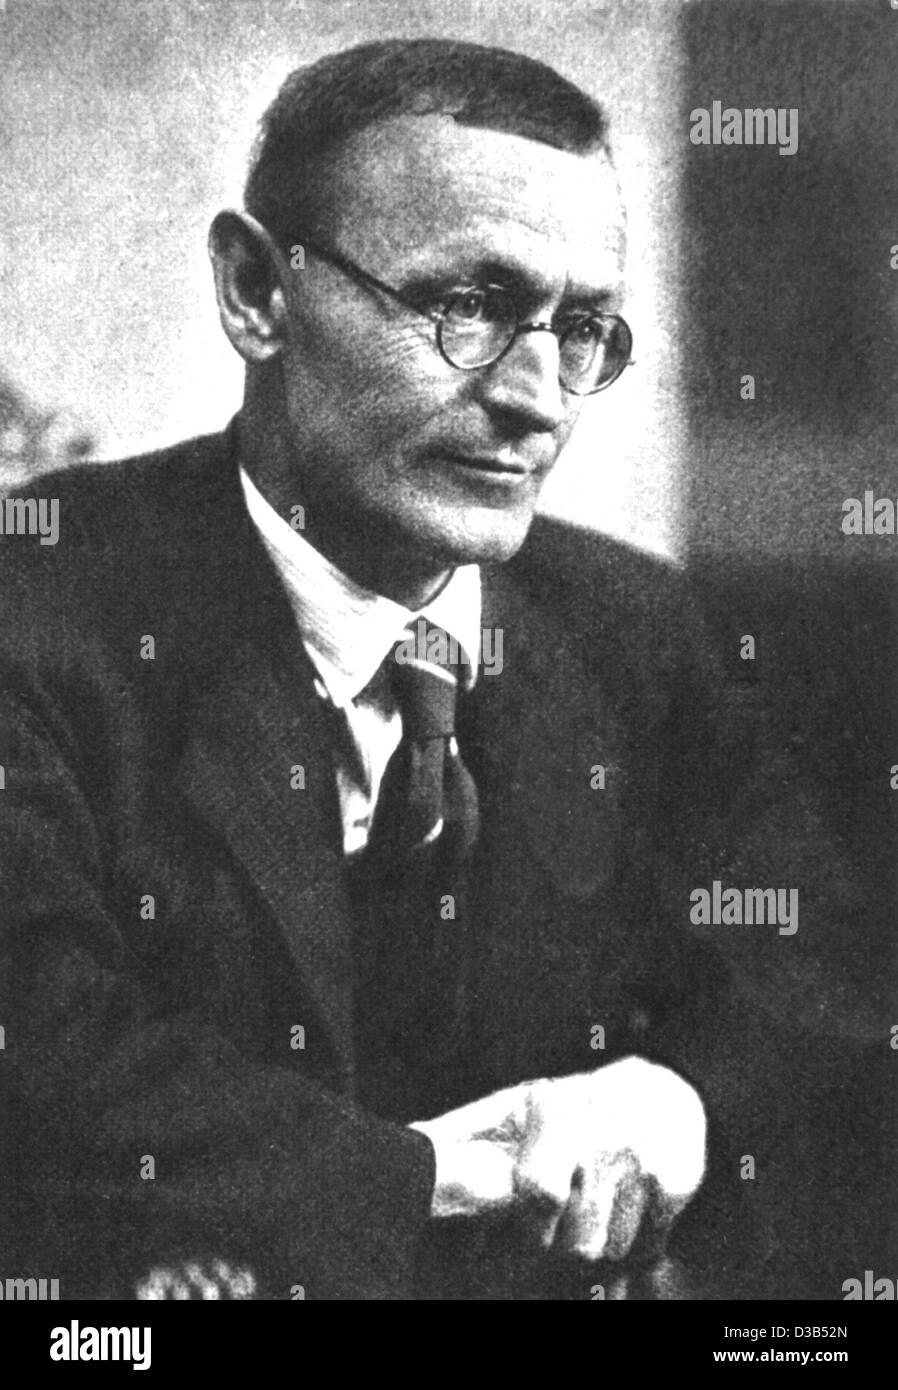 (Dpa) - autore tedesco e il Premio Nobel Hermann Hesse (filer non datato). Hesse era nato a Calw (Germania), 2 luglio 1877 e morì a Montagnola, 9 agosto 1962. L'anno 2002 segna l anniversario dell'autore del 125th compleanno. Hesse ottenuto riconoscimento internazionale con i romanzi come 'Siddha Foto Stock